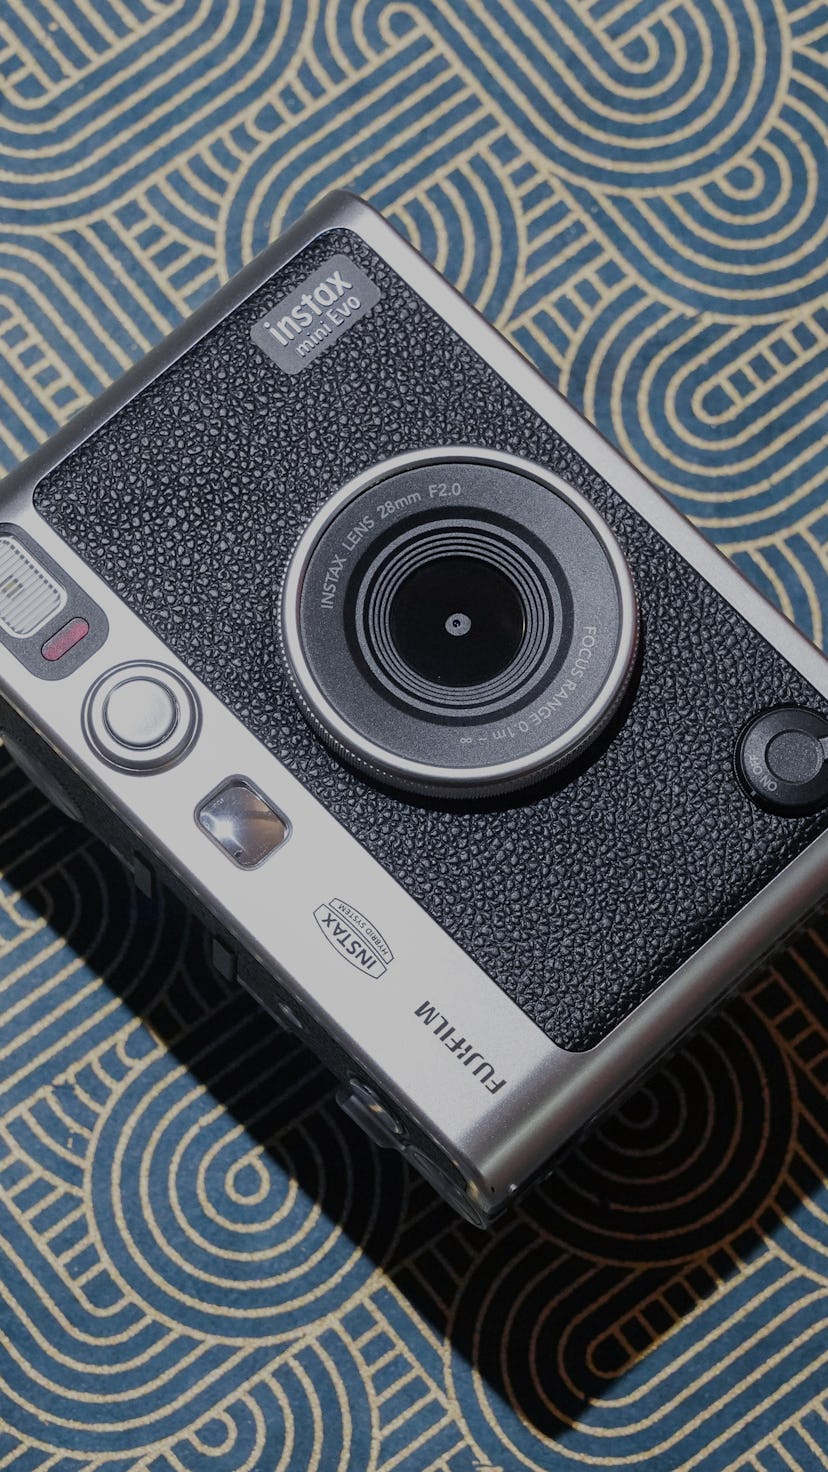 Fujifilm Instax Evo review: The best instant camera ever made no cap